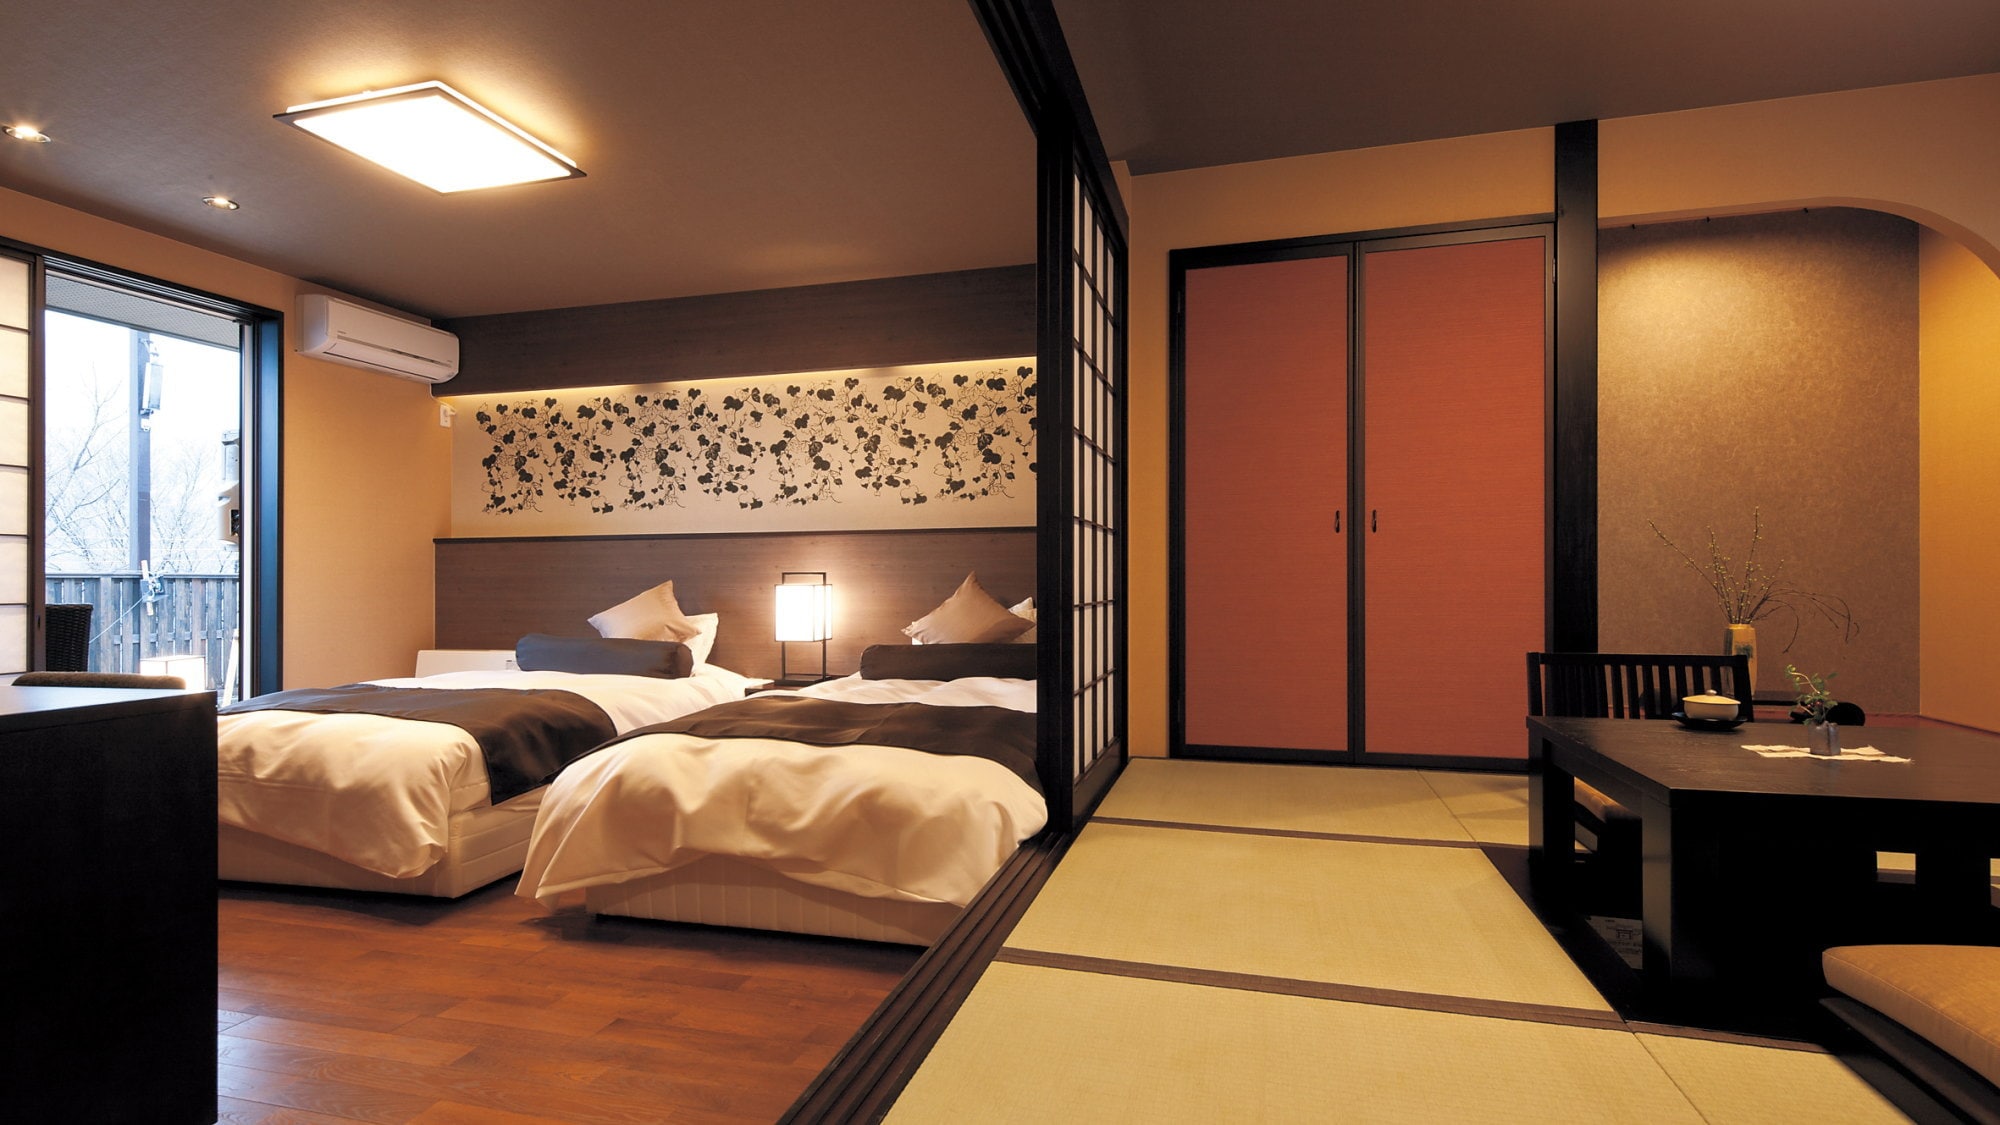 일본식・양실이 인접한 구조의 방을 즐겨 주세요.